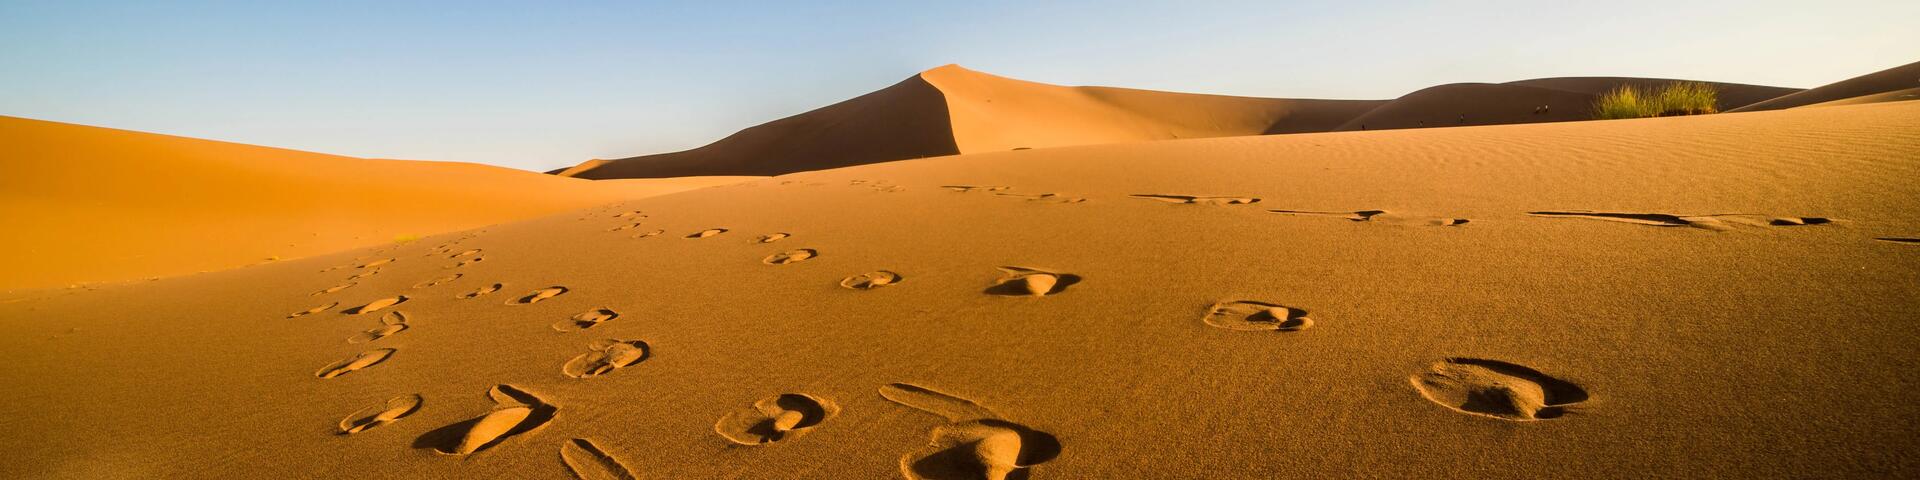 Je woestijntocht voorbereiden in 4 stappen